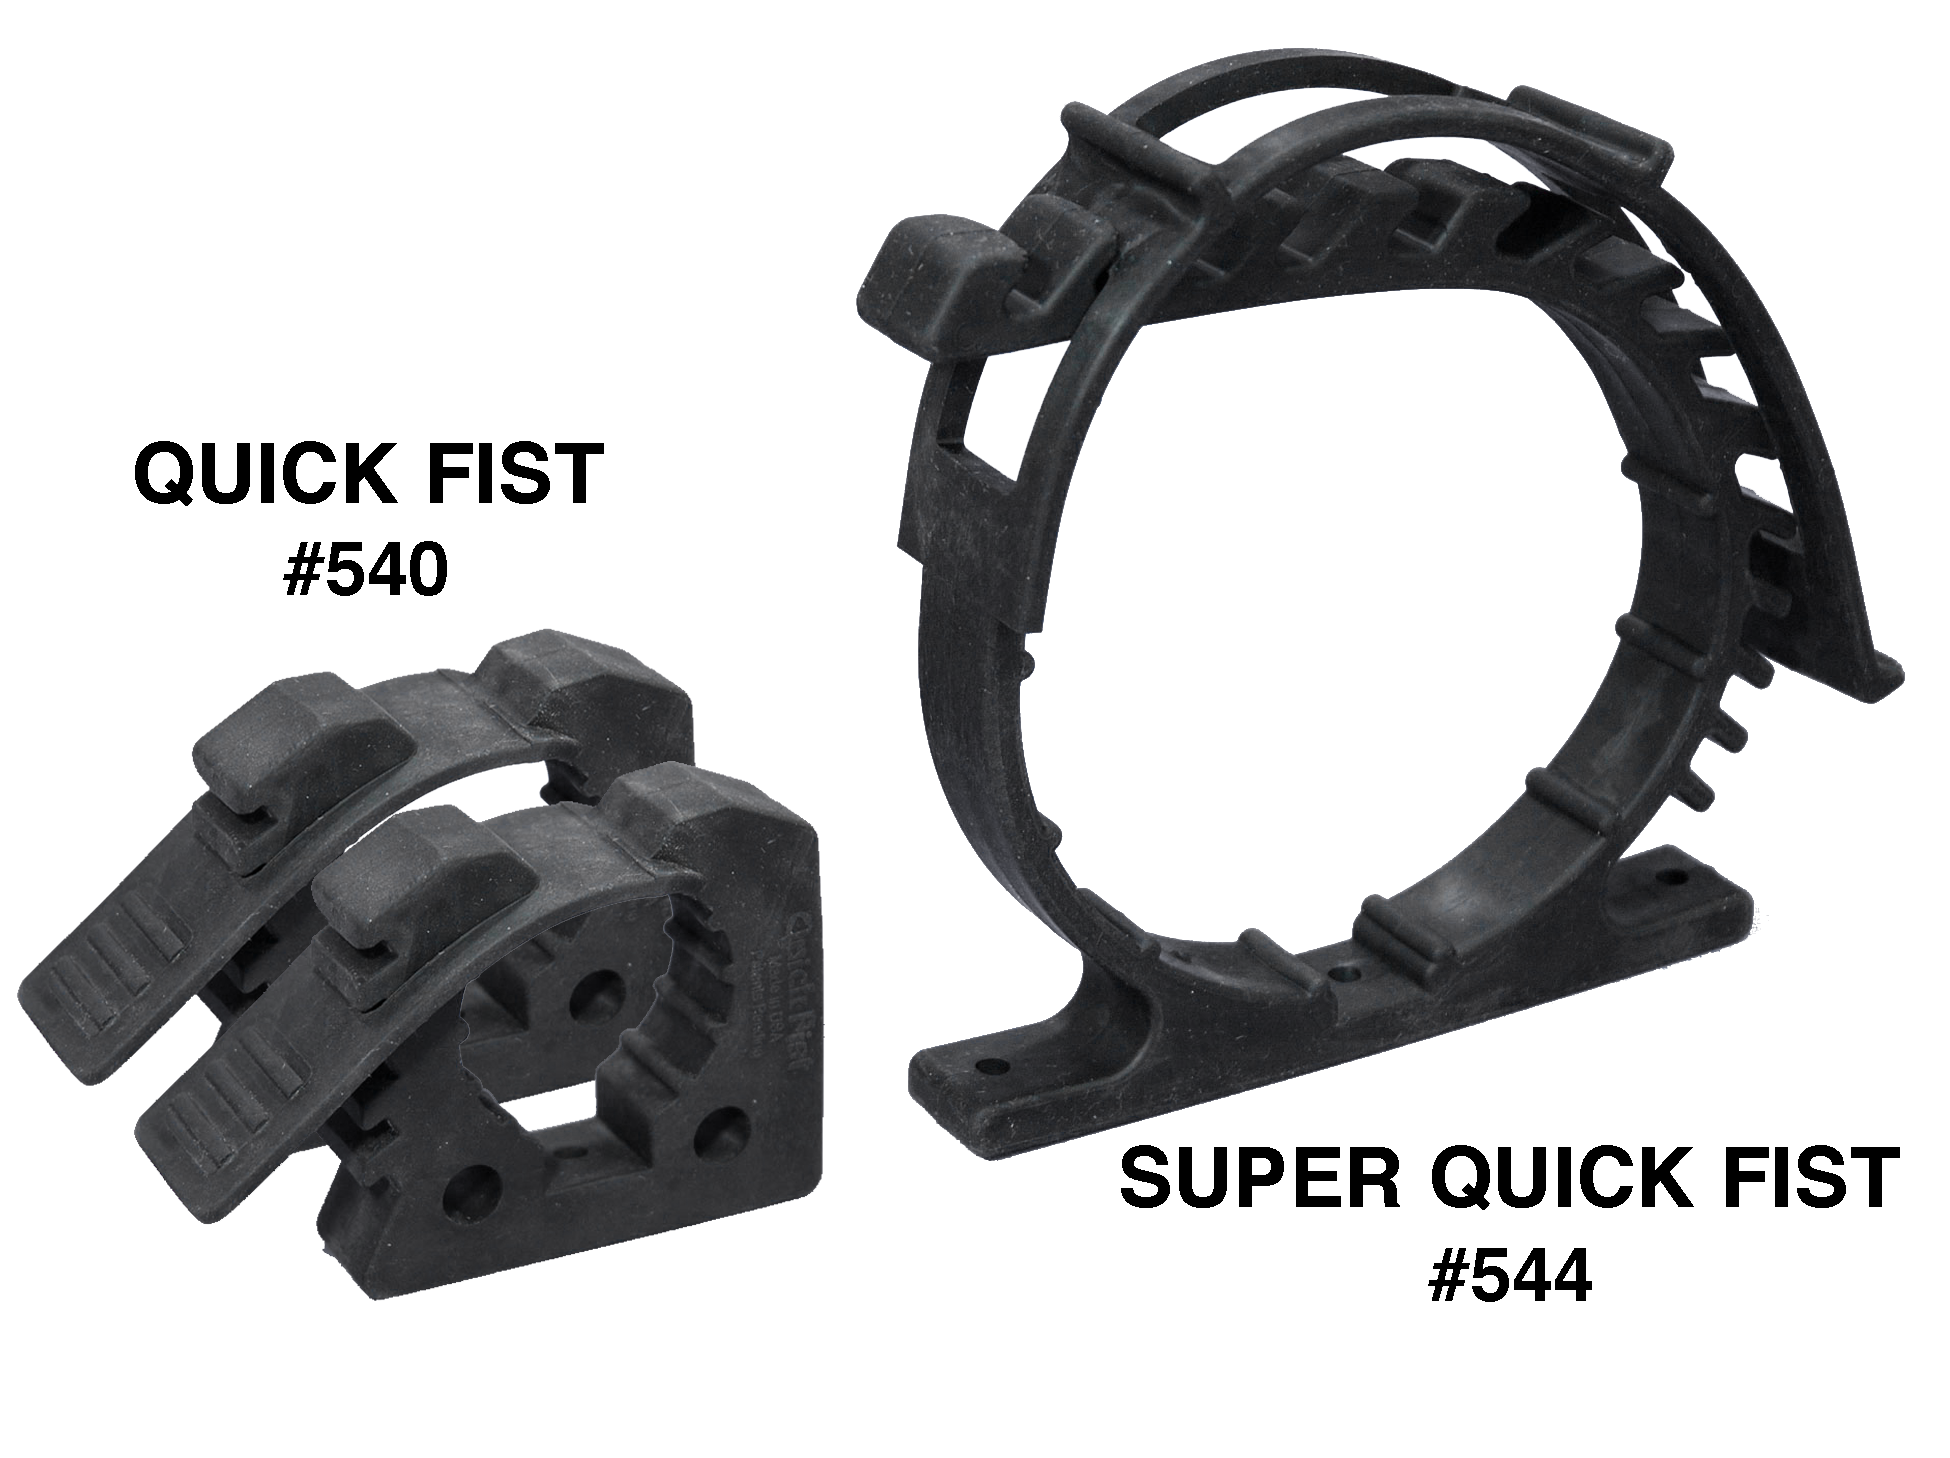 Super Quick Fist™ - SKU 544